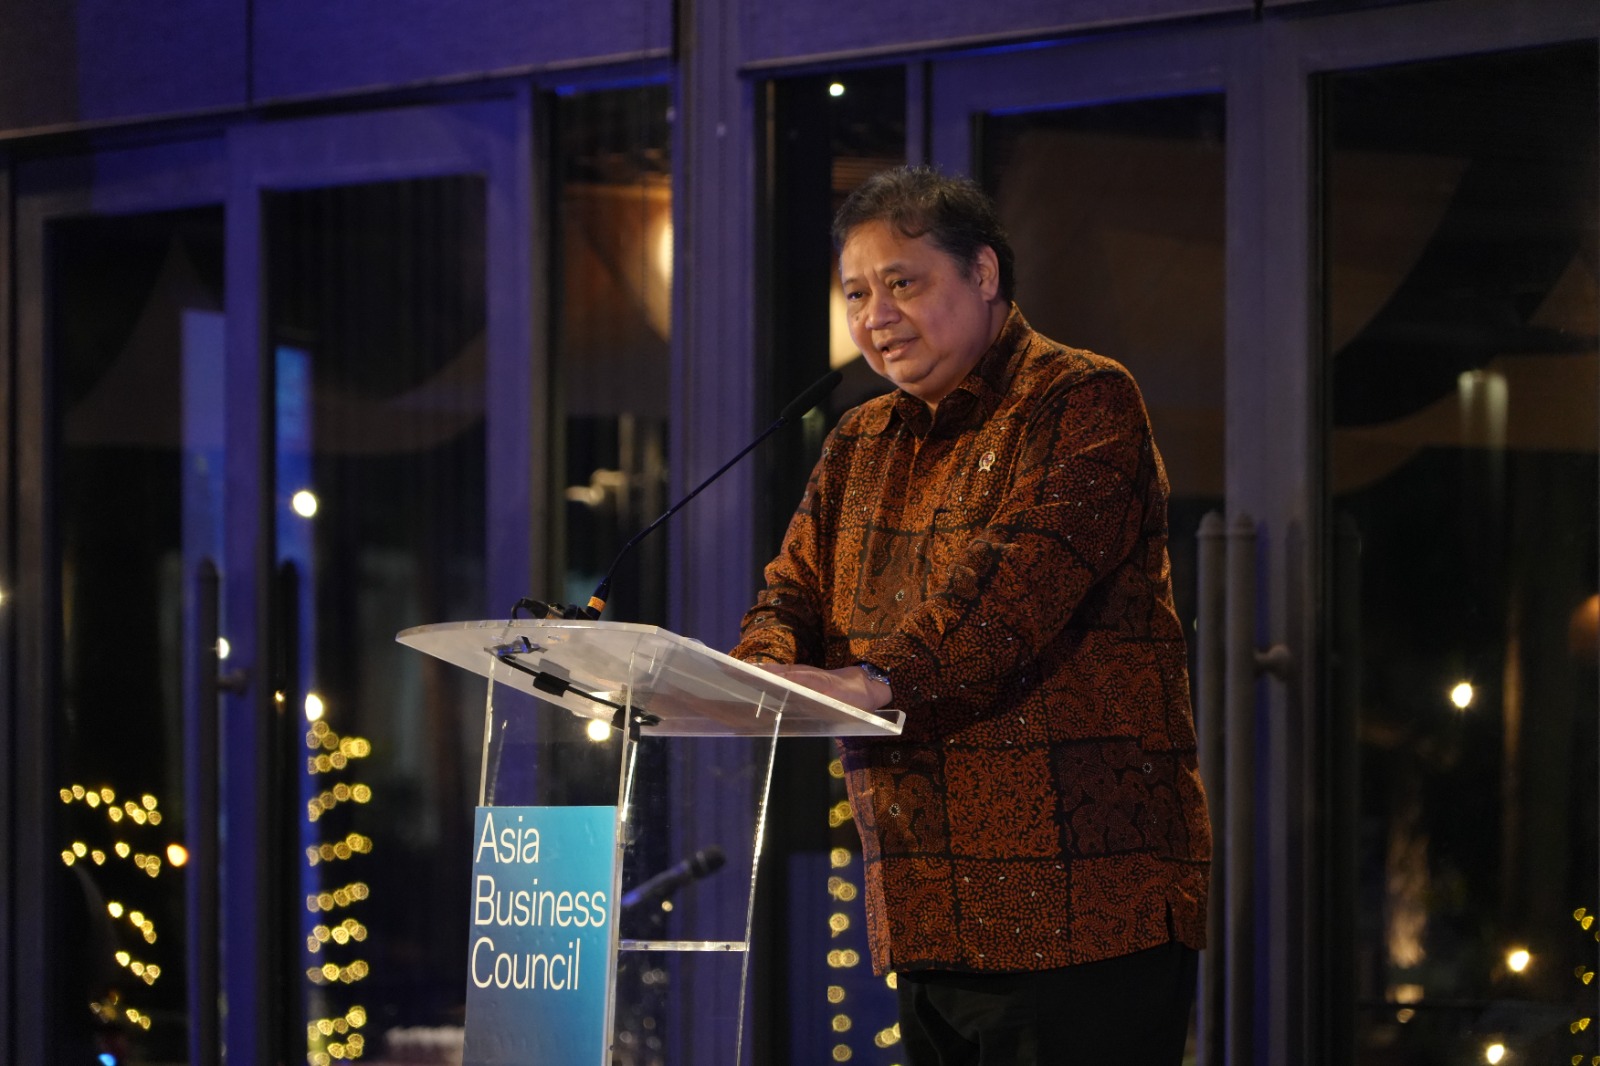 Asian Business Council: Menteri Airlangga menggarisbawahi komitmen Indonesia untuk mempercepat pembangunan ekonomi dengan memastikan keberlangsungan reformasi struktural dan meningkatkan daya saing